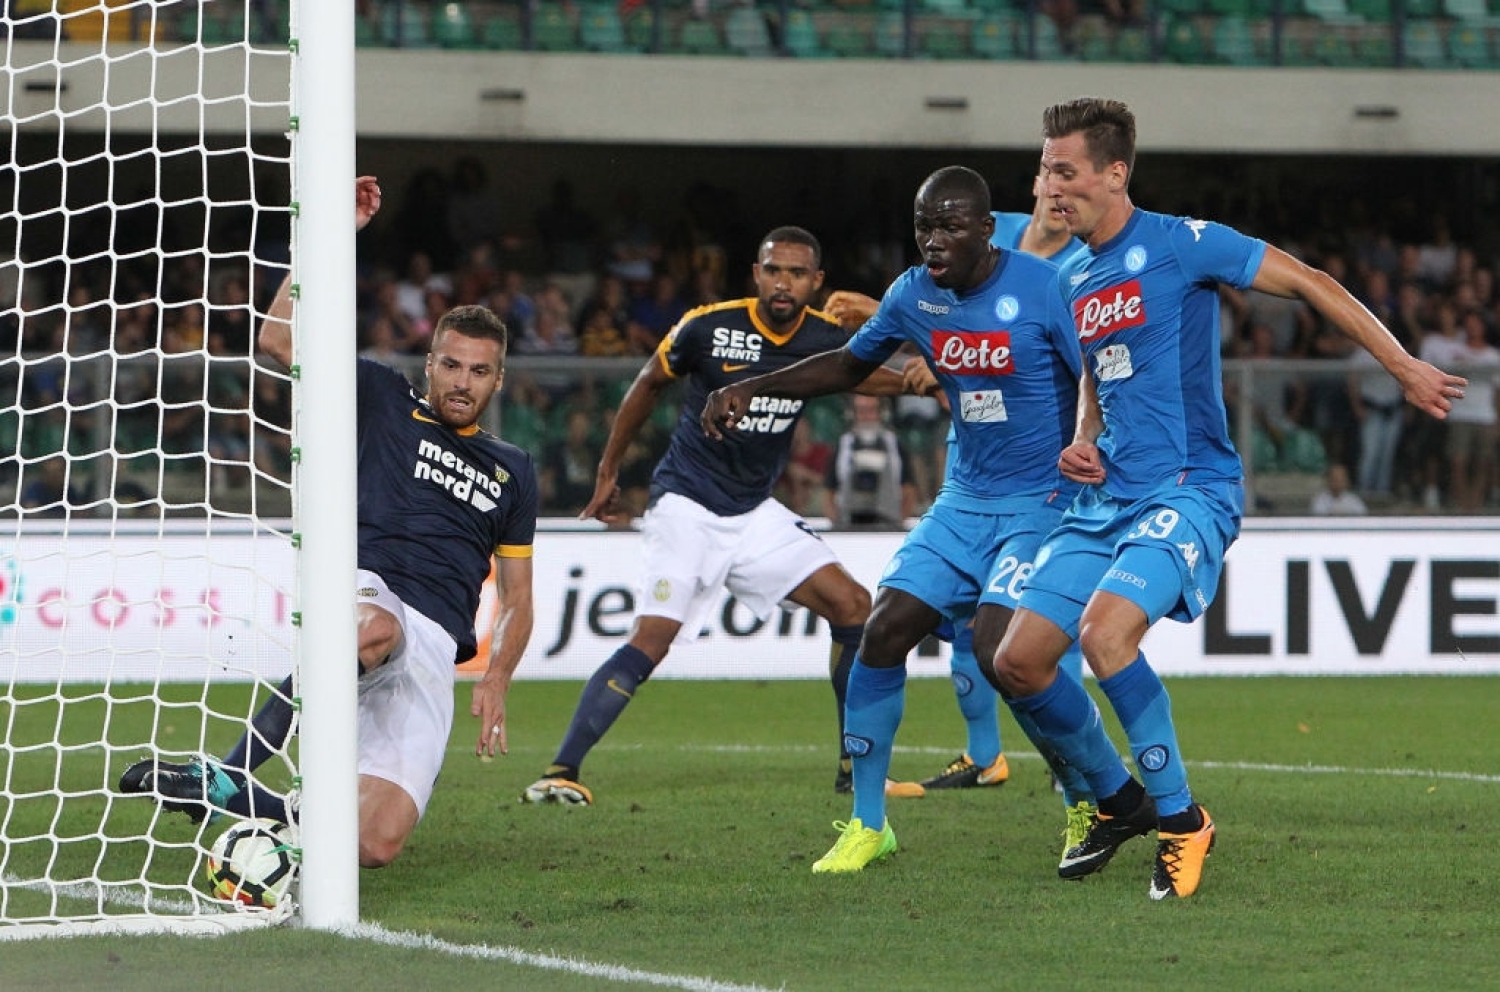 H.Verona - Napoli, i precedenti: 2 vittorie su 2 per i partenopei nelle ultime 2 uscite al "Bentegodi"